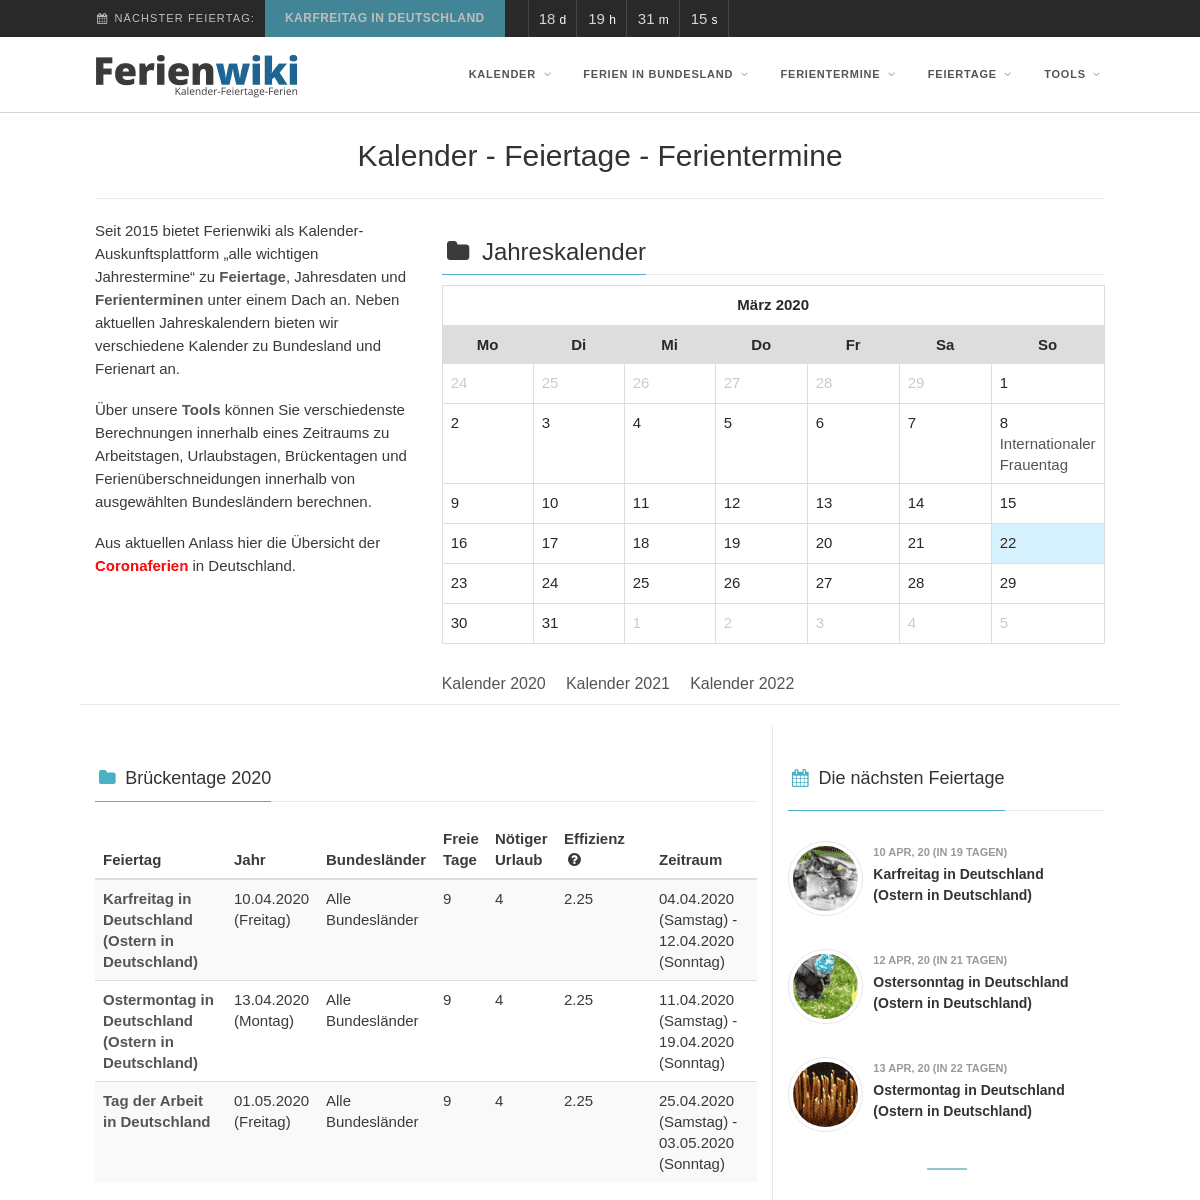 A complete backup of ferienwiki.de